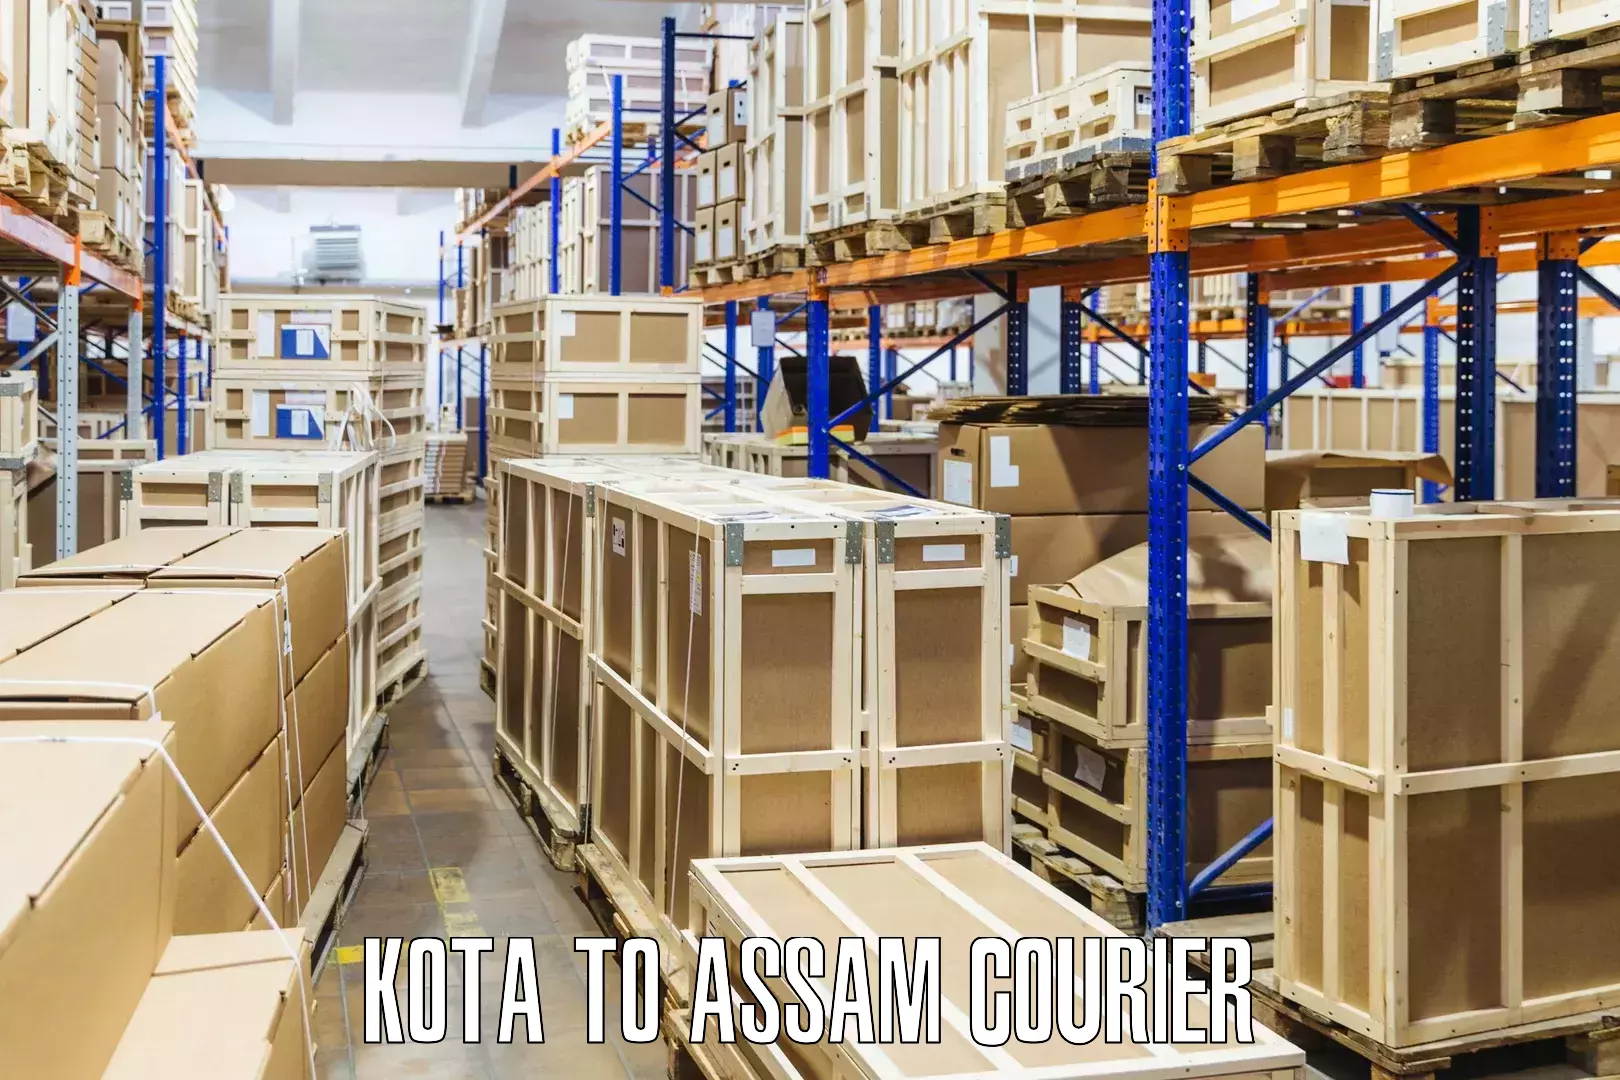 High-capacity shipping options Kota to Sonitpur